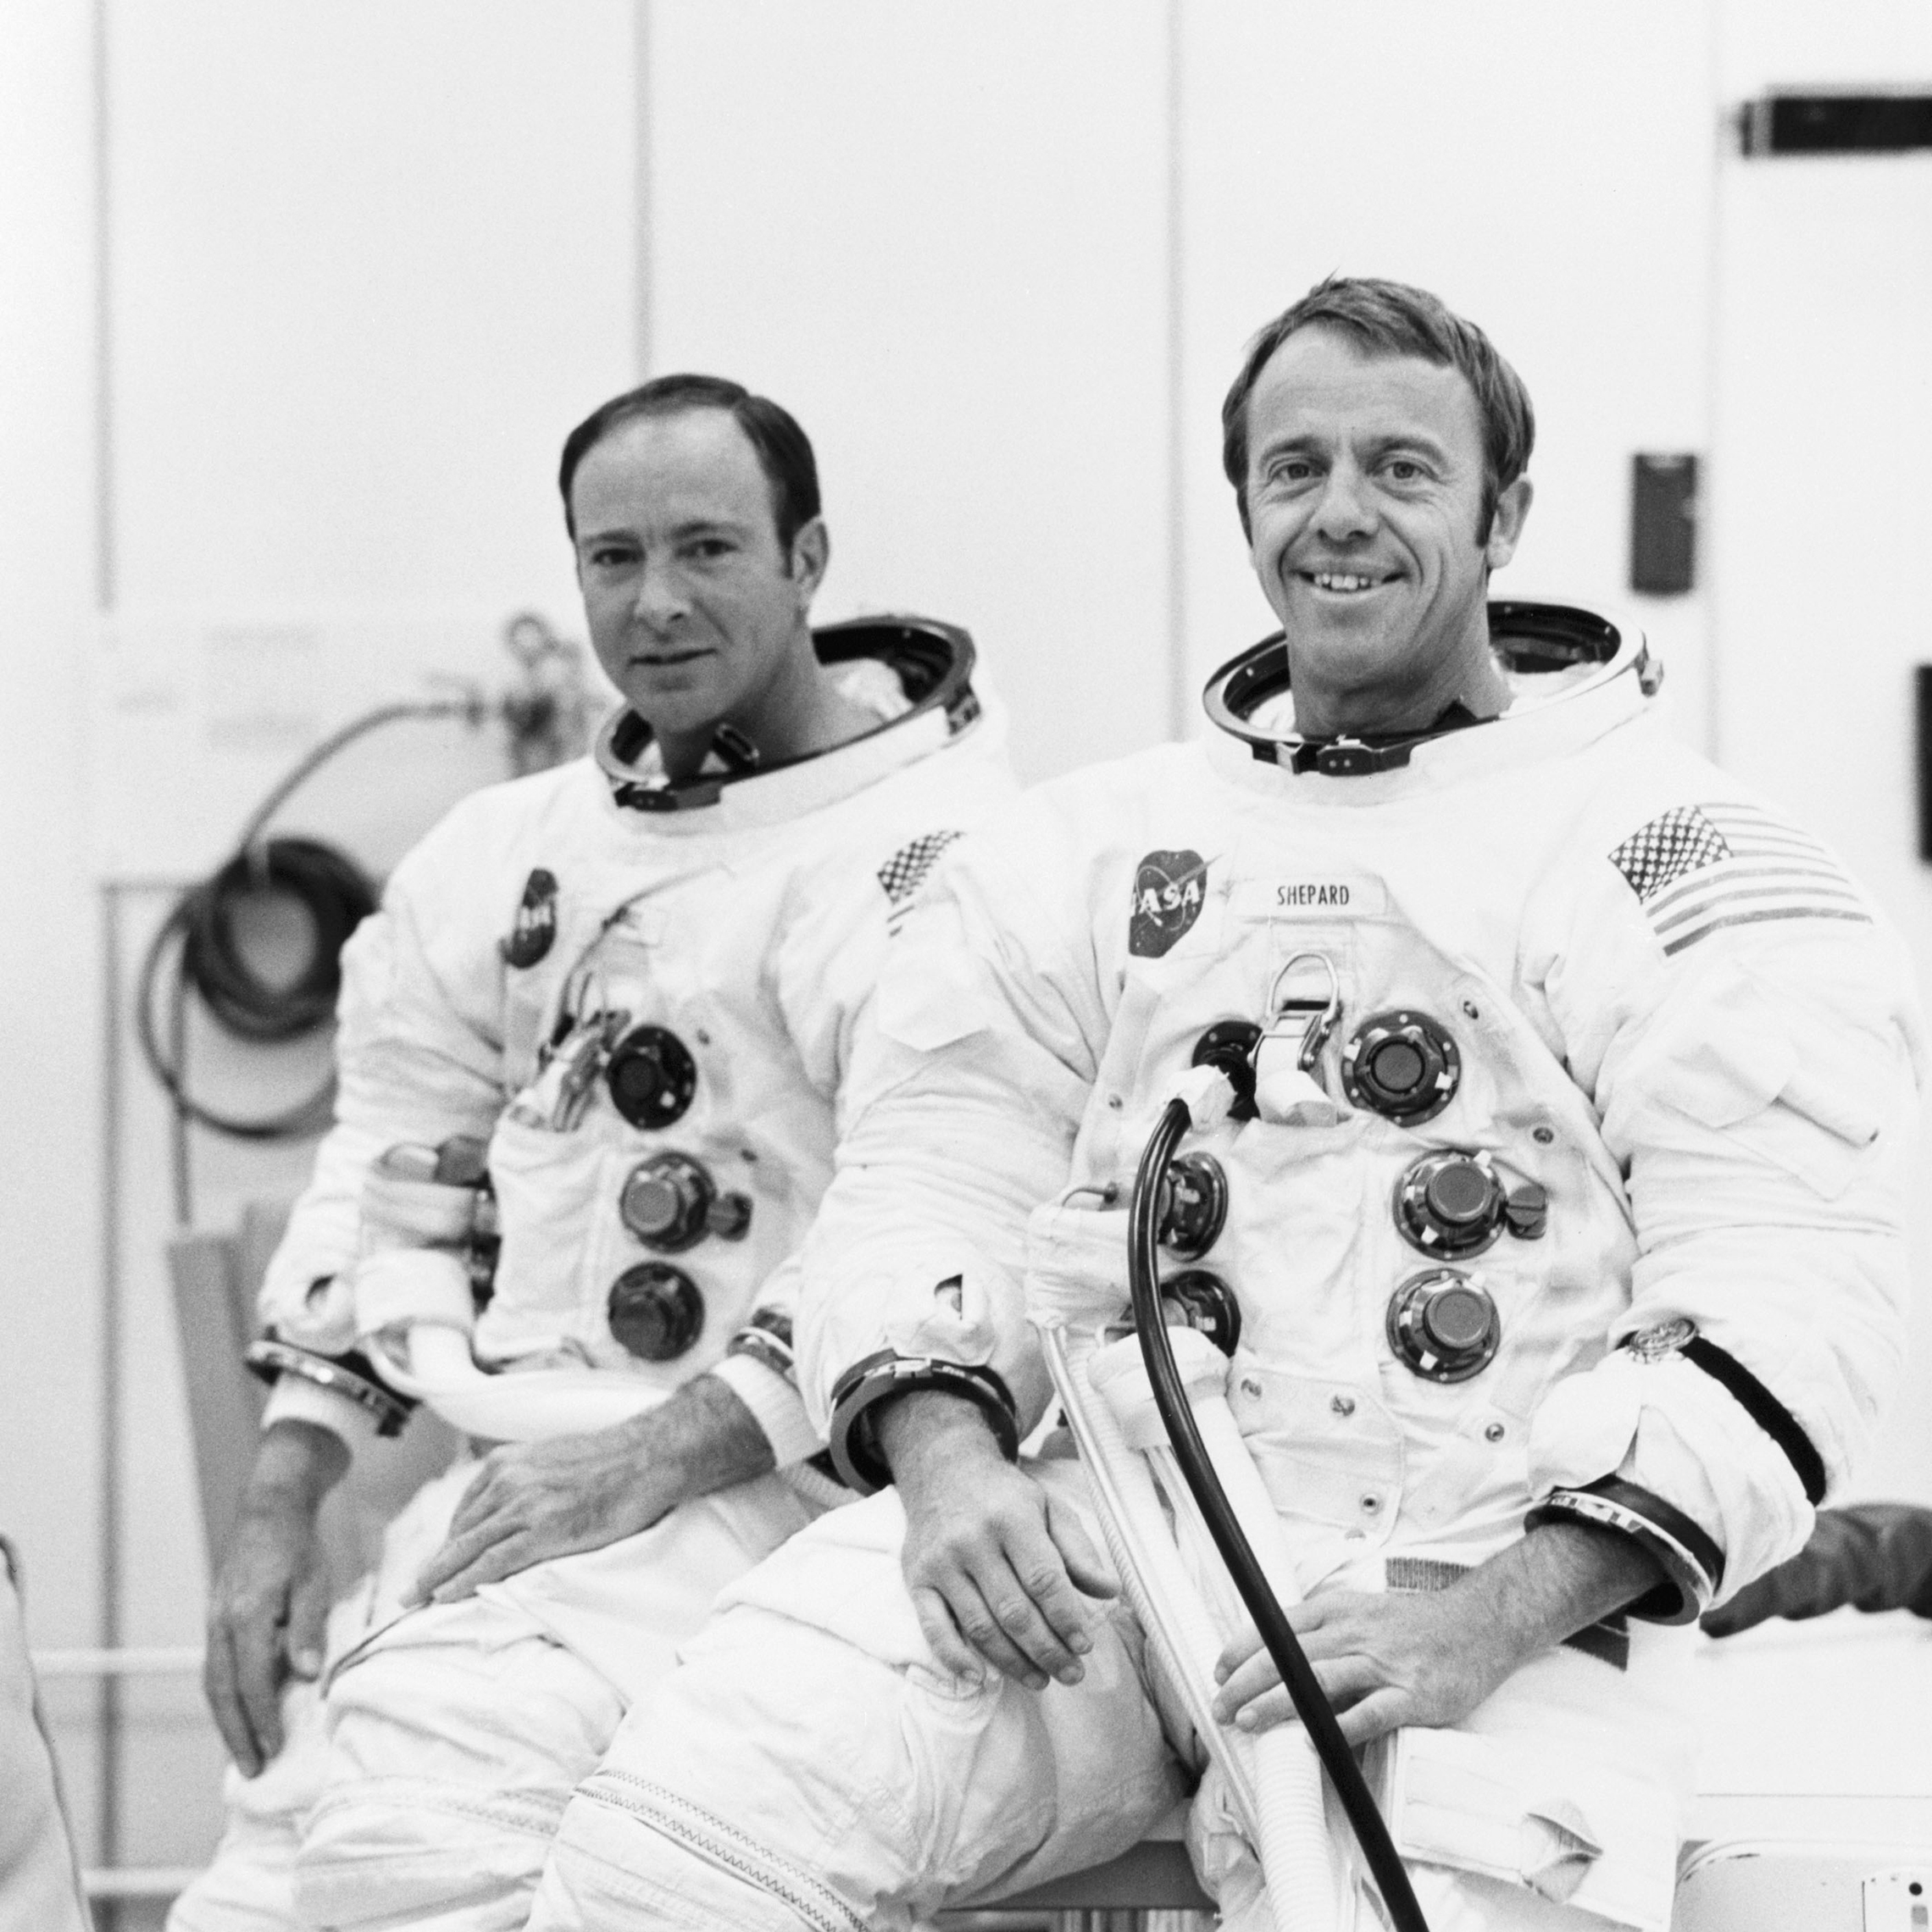 18. September 1970: Astronautene Alan B. Shepard Jr. (til høyre), kommandør og Edgar D. Mitchell, månemodulpilot, er egnet for en bemannet høydetur i Apollo 14 månemodulen (lm). Det bemannede løpet i et vakuumkammer i Bemannede Romfartøyets Operasjonsbygning ble utført for å validere LMS kommunikasjons-og veilednings-og navigasjonssystemer. 18. September 1970: Astronautene Alan B. Shepard Jr., kommandør, Og Edgar D. Mitchell, lunar module pilot, er egnet for en bemannet høyde løp I Apollo 14 lunar module (LM). Det bemannede løpet i et vakuumkammer i Bemannede Romfartøyets Operasjonsbygning ble utført for å validere LMS veilednings-og navigasjonssystemer.'s communications and guidance and navigation systems. (NASA)